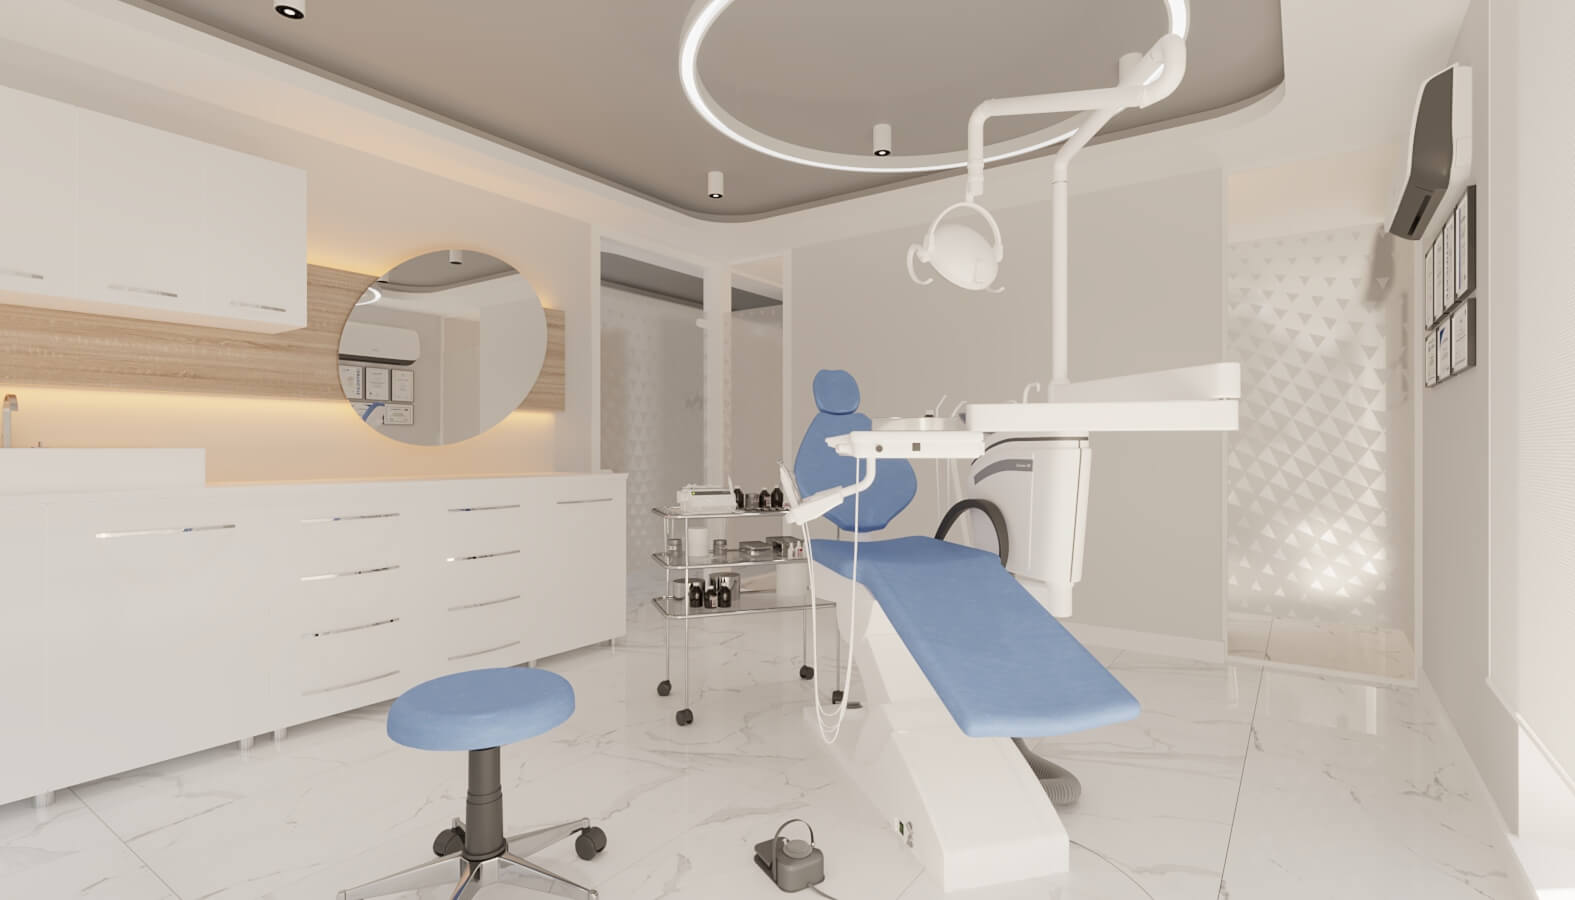  Surgery Clinic 4558 Ankara Dental Clinic Design Healthcare